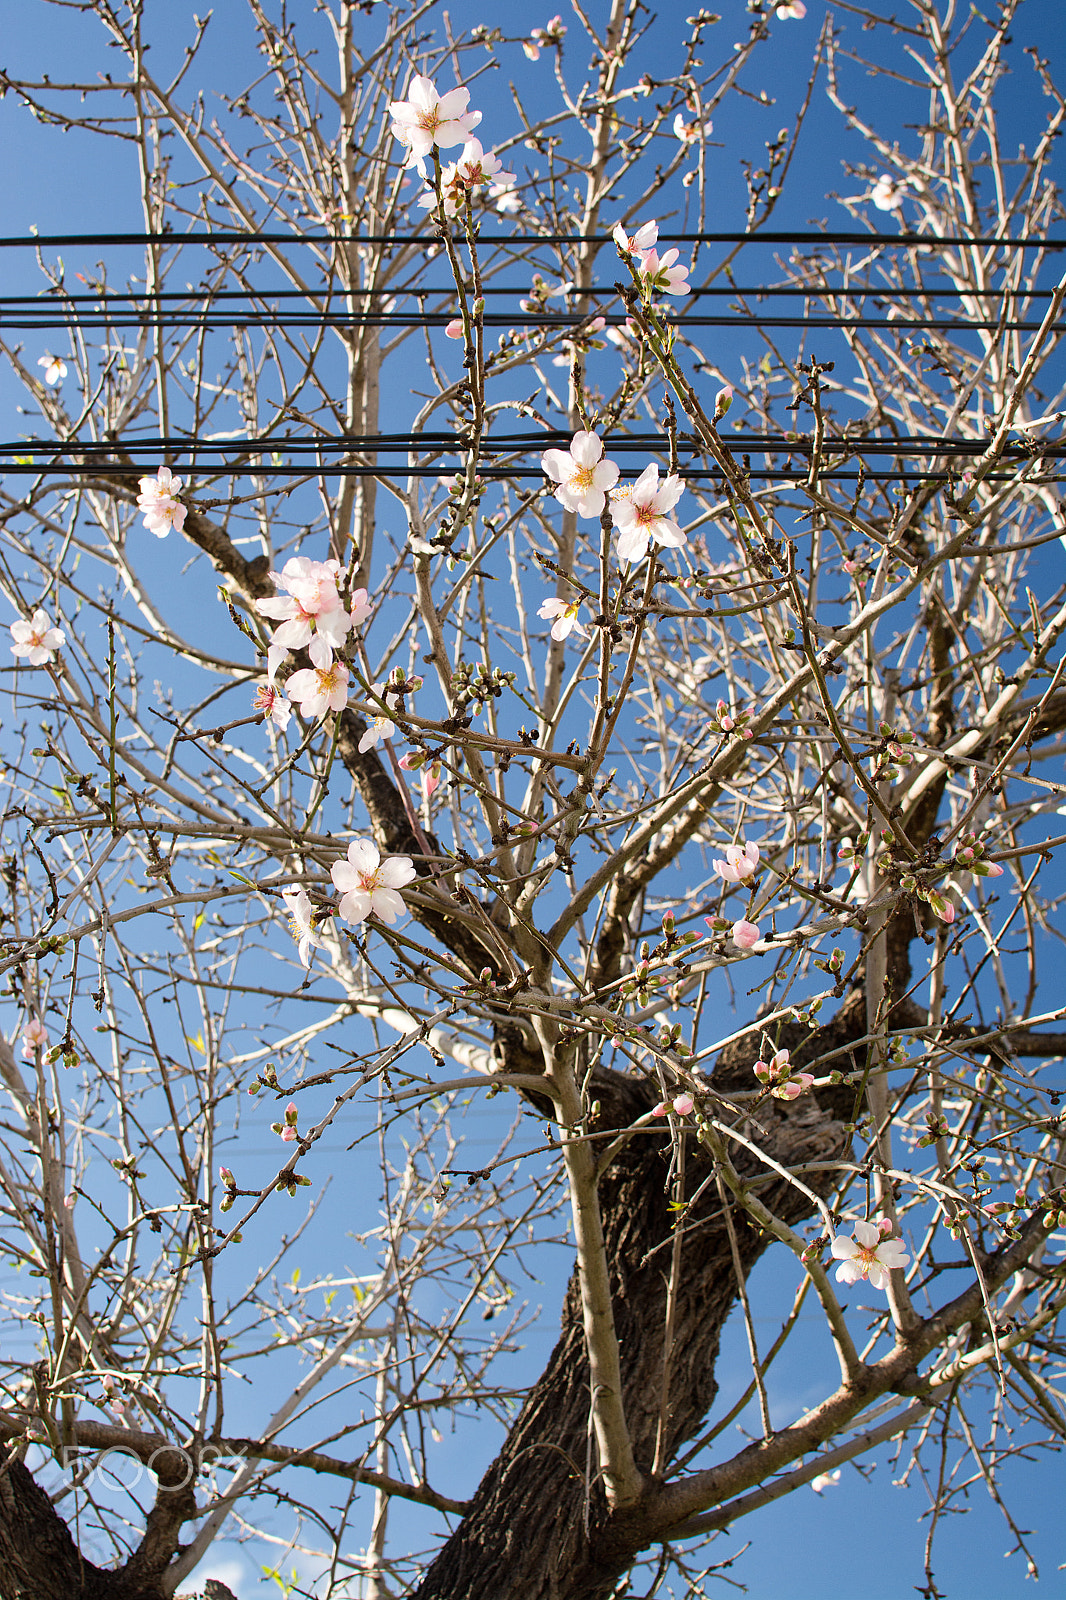 AF Nikkor 70-210mm f/4-5.6D sample photo. Almond trees blossom photography